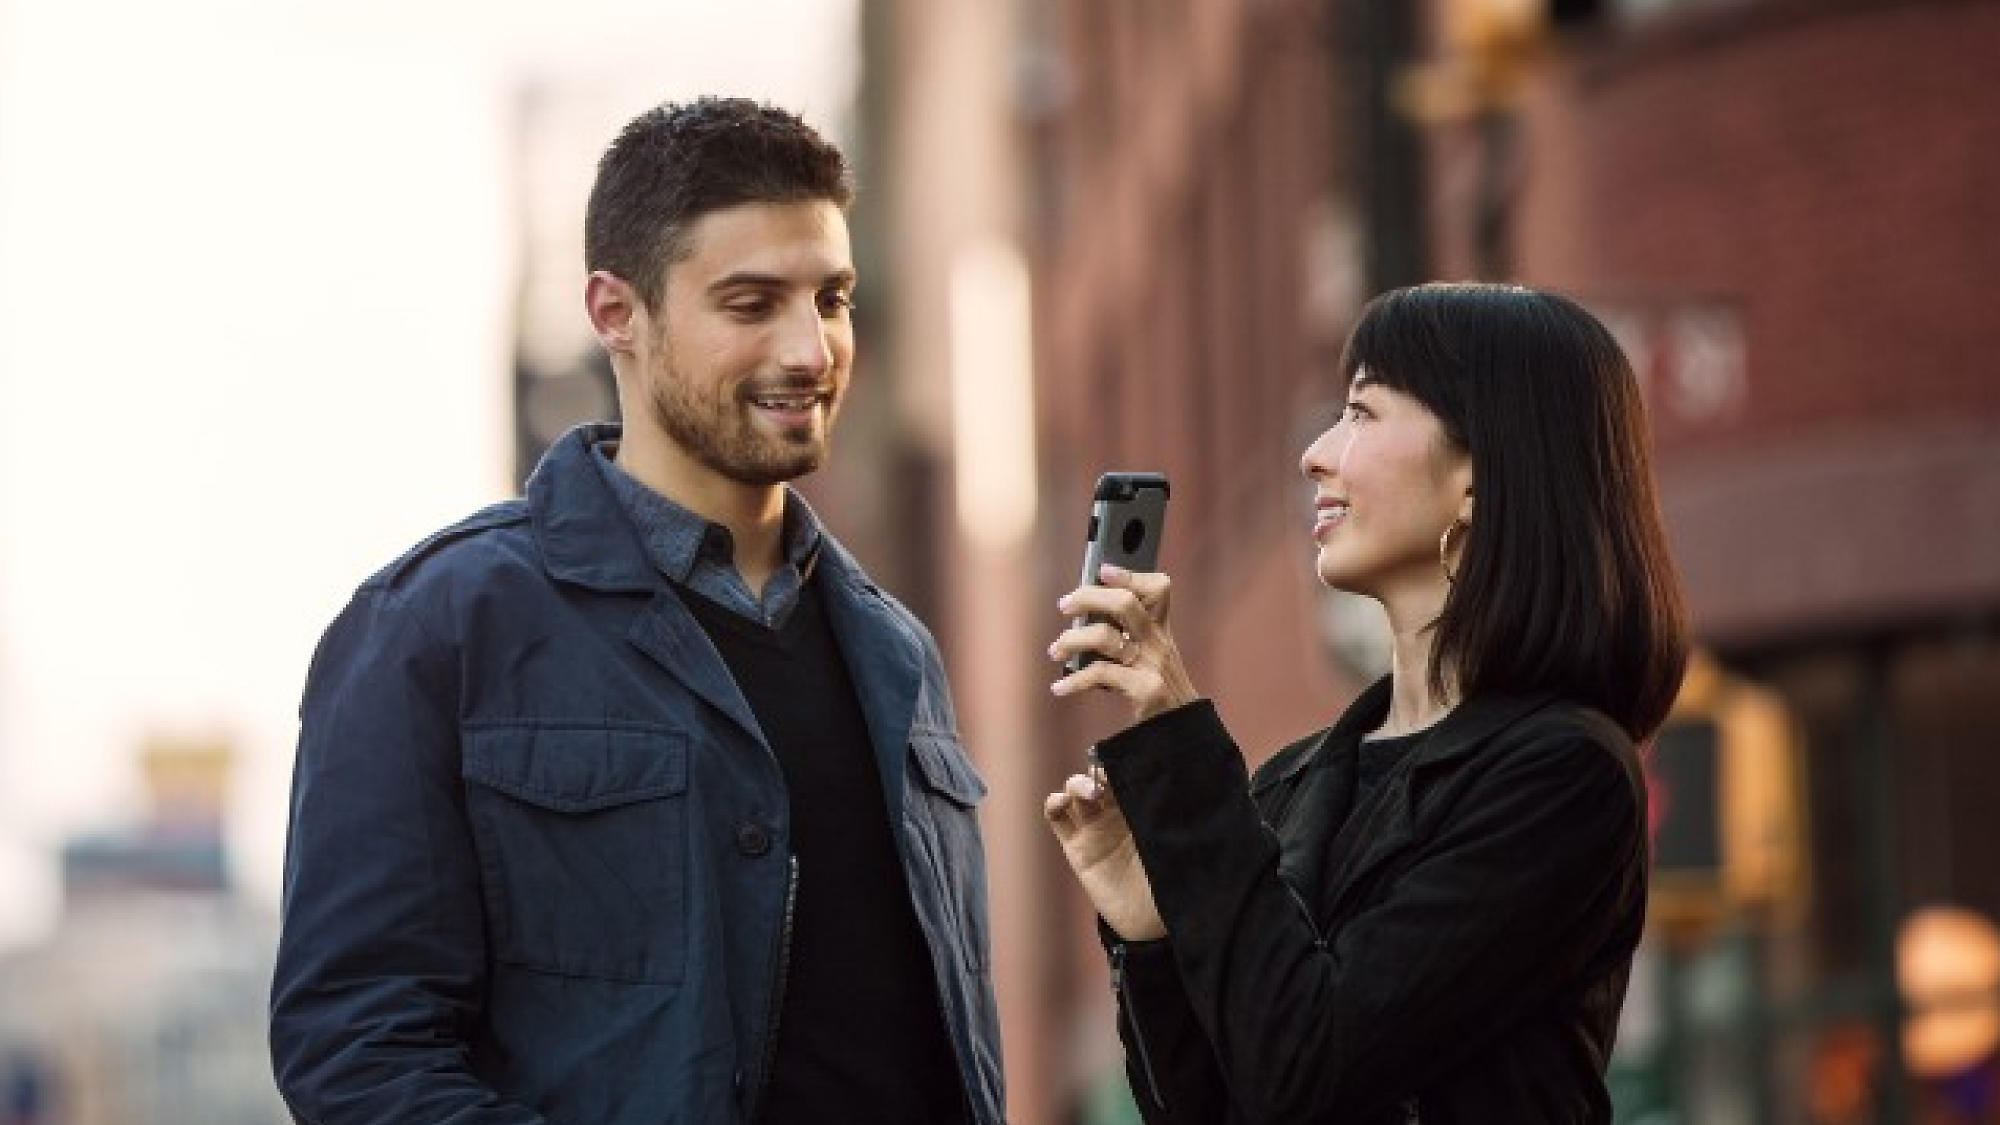 Naine hoiab käes nutitelefoni mehe poole suunatuna, nad seisavad linnatänaval, naeratavad ja vestlevad.